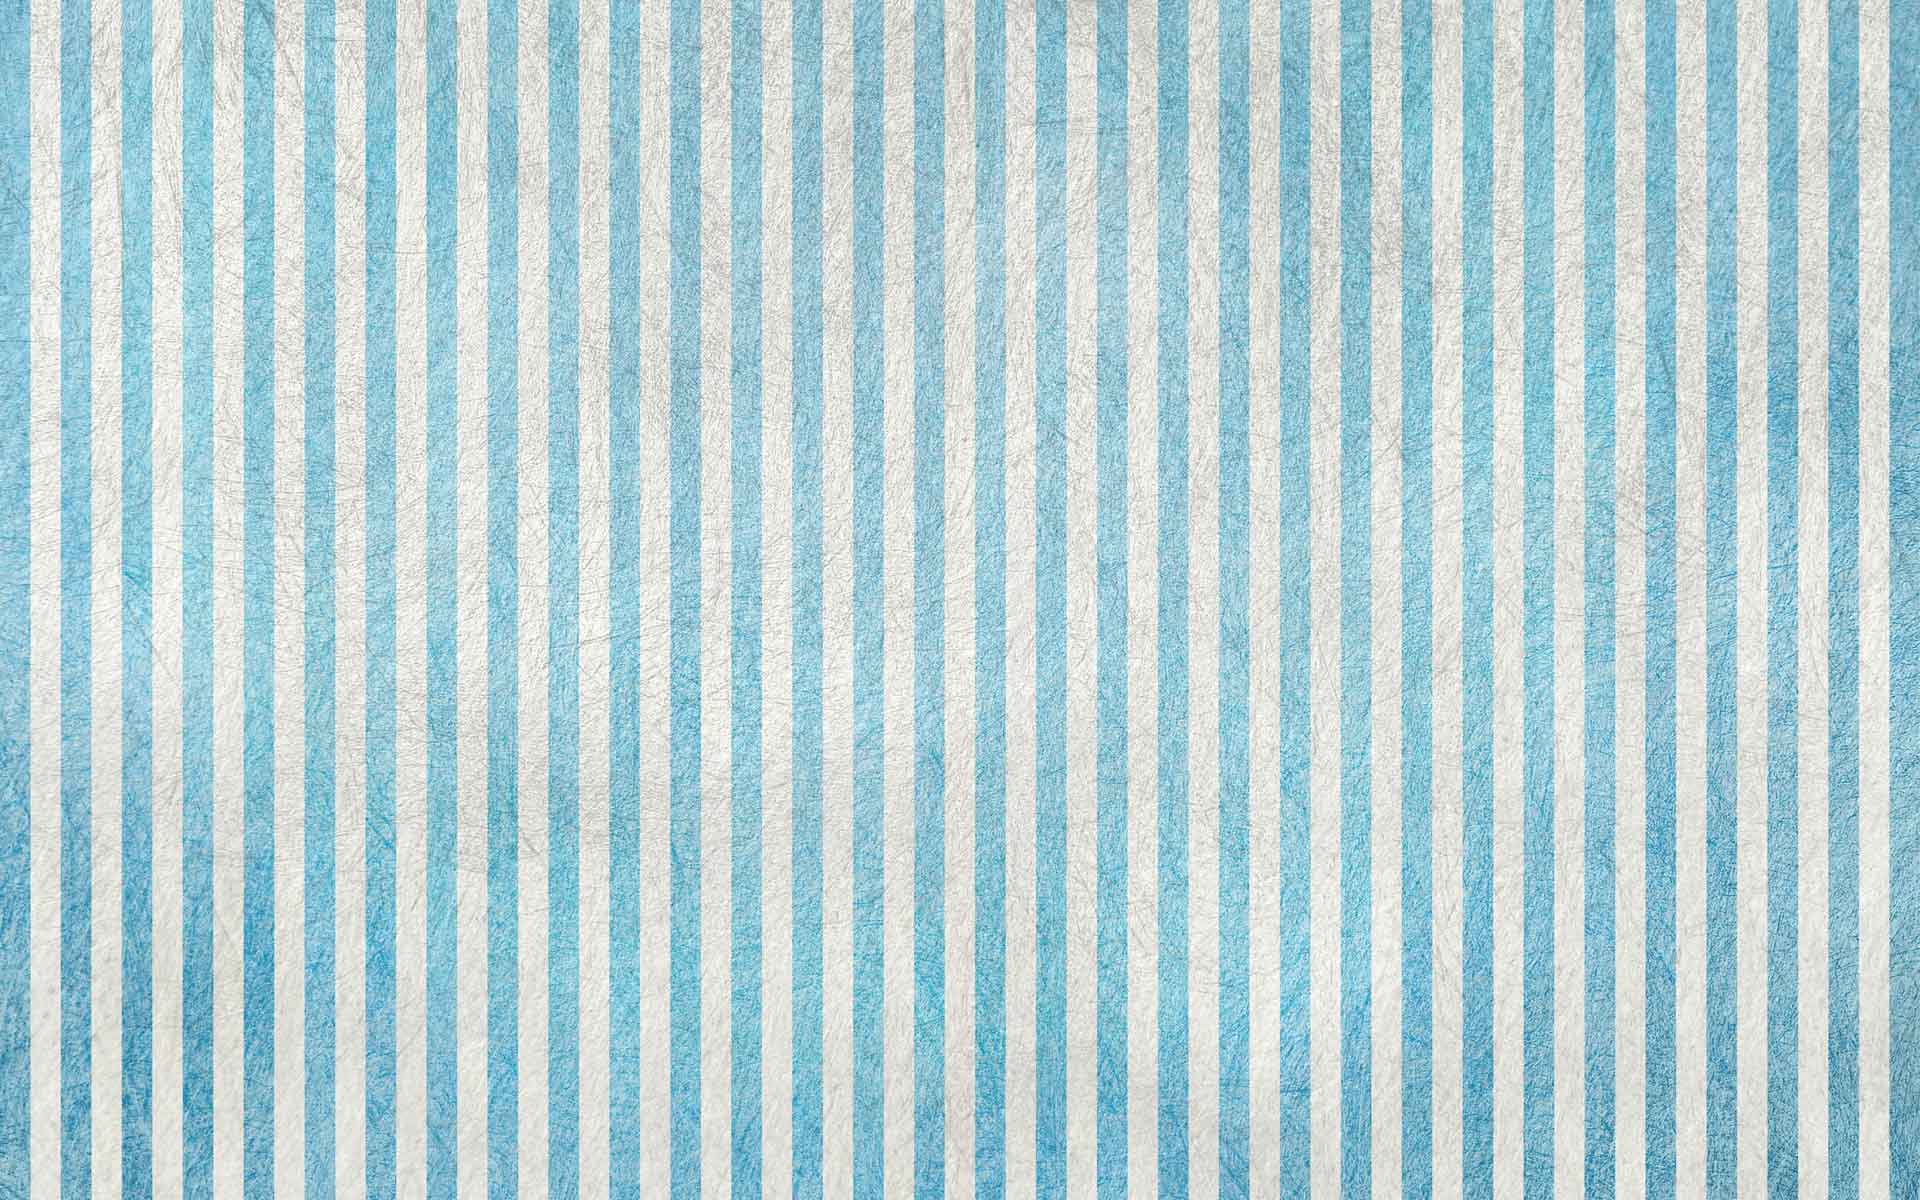 Stripe Wallpaper 25489 1920x1200 px